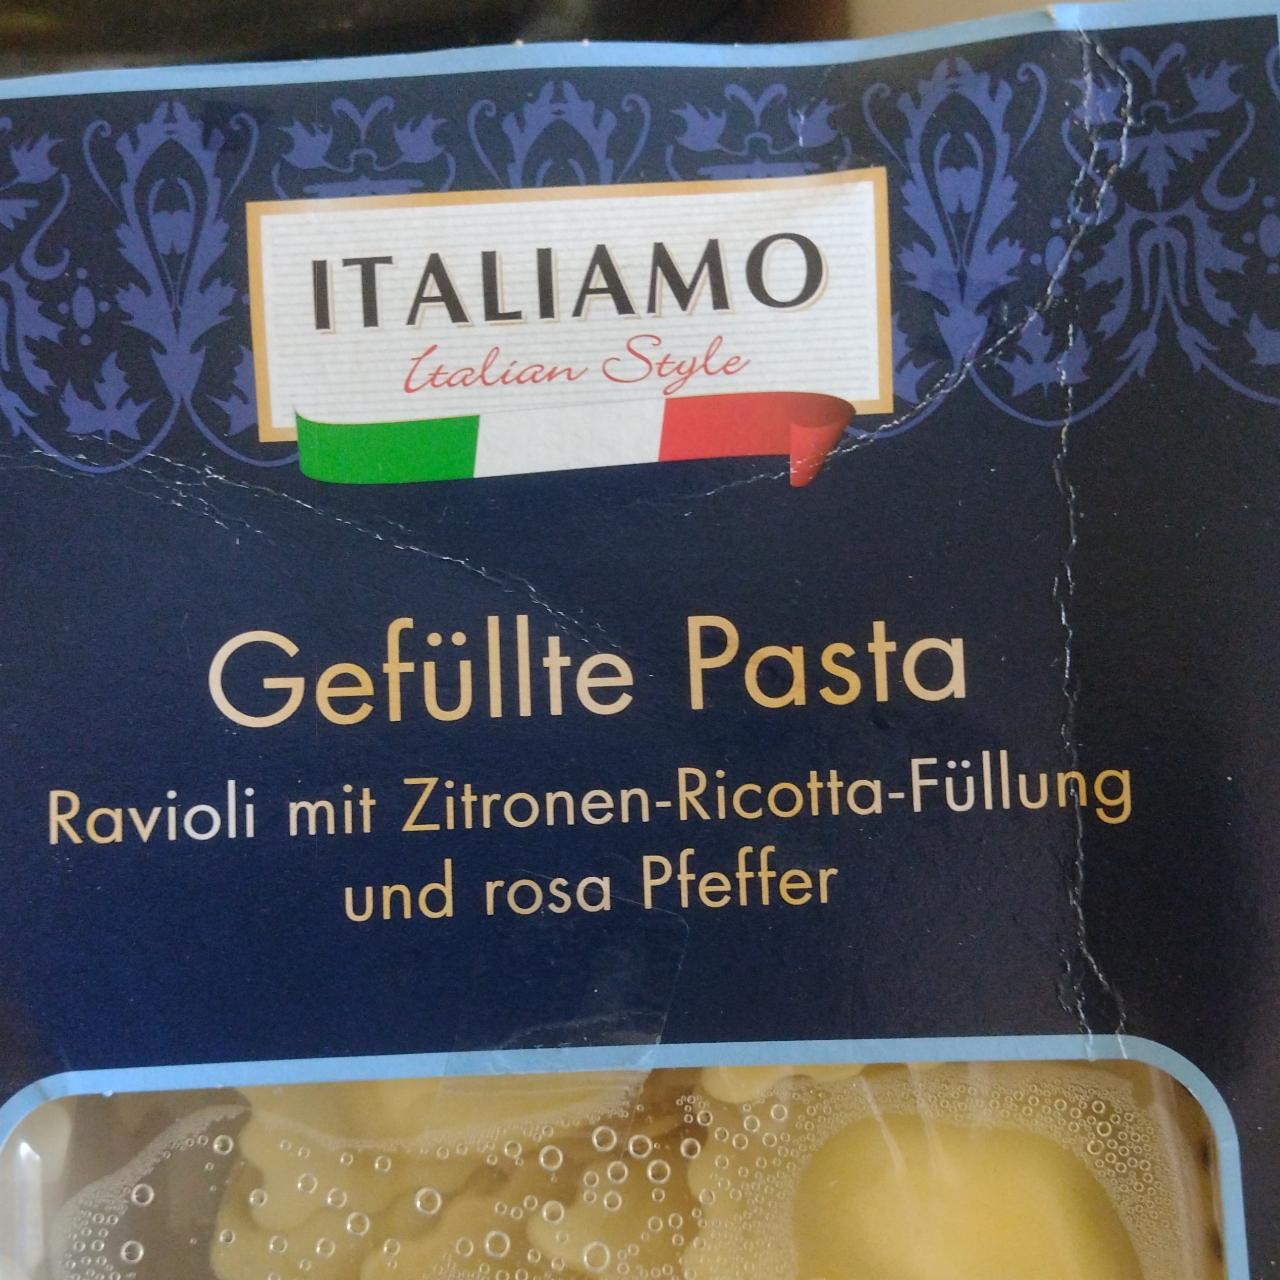 Fotografie - Gefüllte Pasta Ravioli mit Zitronen-Ricotta-Füllung und rosa Pfeffer Italiamo